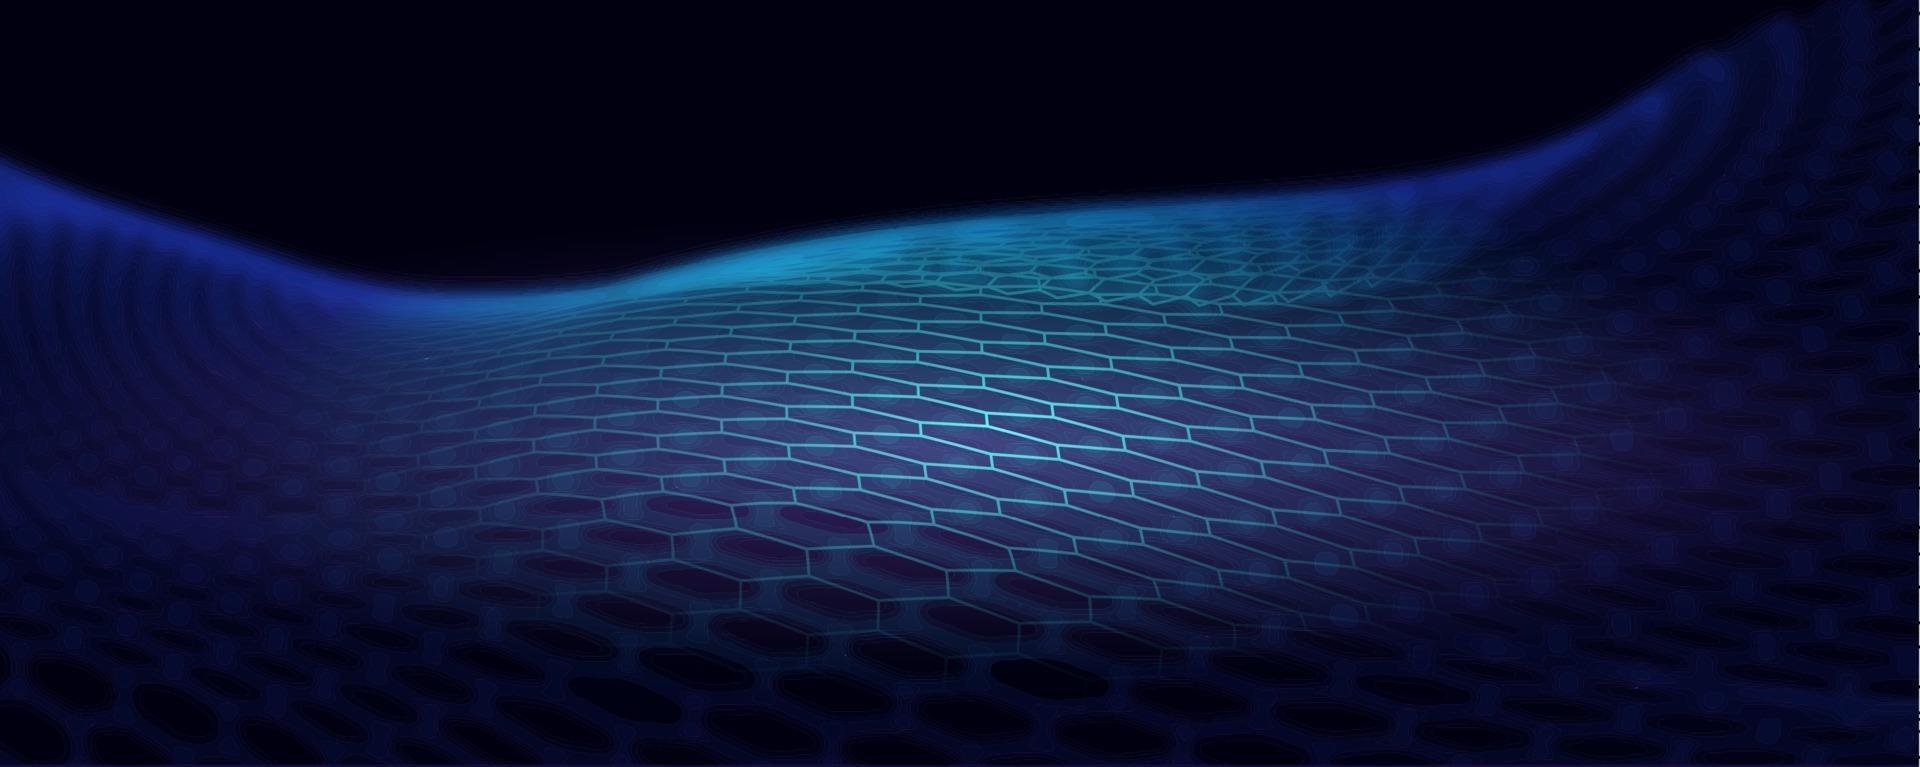 partículas de ondas digitales. ola futurista. Ilustración de vector de fondo de tecnología abstracta